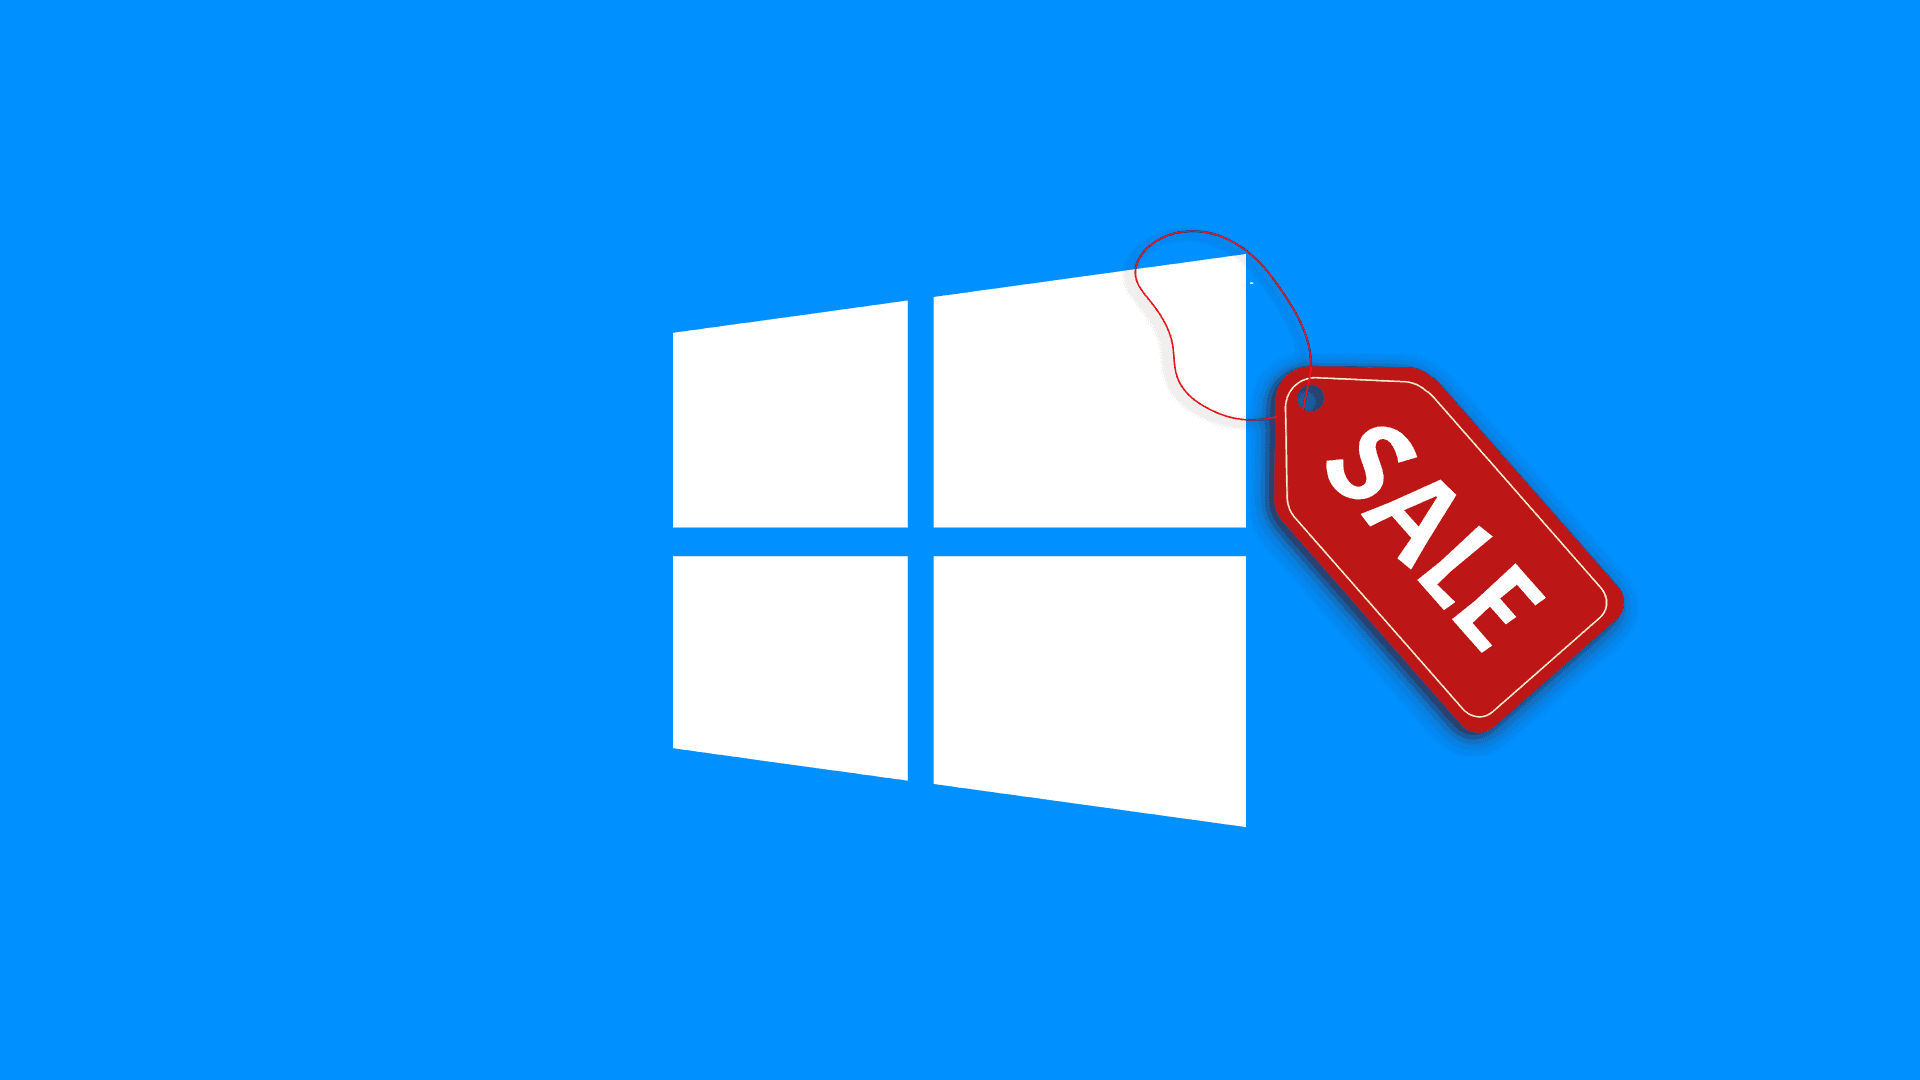 CDKEYLORD Windows 10 PRO Genuine Lifetime License pour seulement 14 € avec mise à jour gratuite vers Windows 11 - remises jusqu'à 91% !